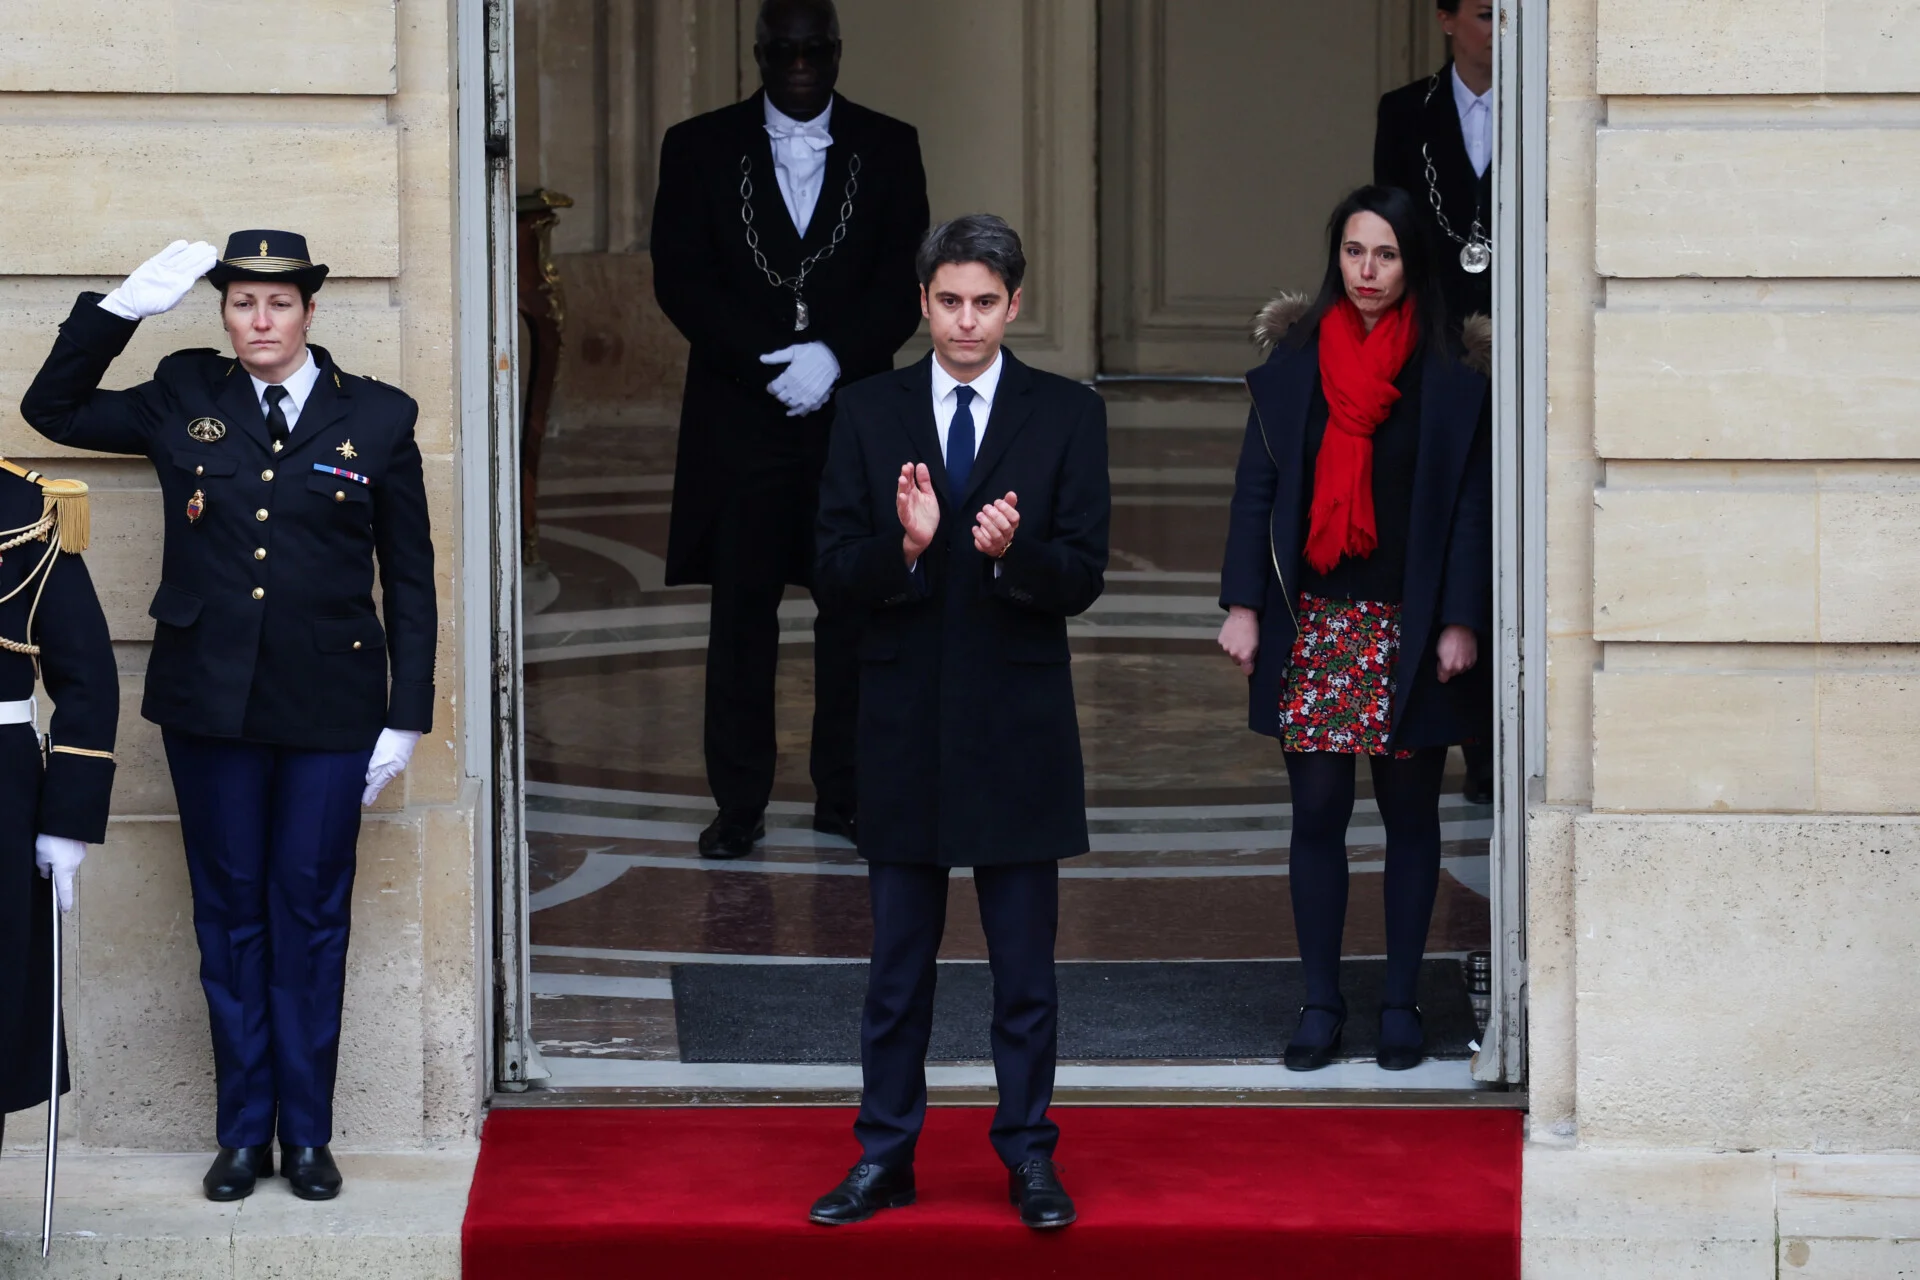 Γκαμπριέλ Ατάλ, Πρωθυπουργός Γαλλίας: Επιλογή υπουργών με αξιοκρατικά κριτήρια